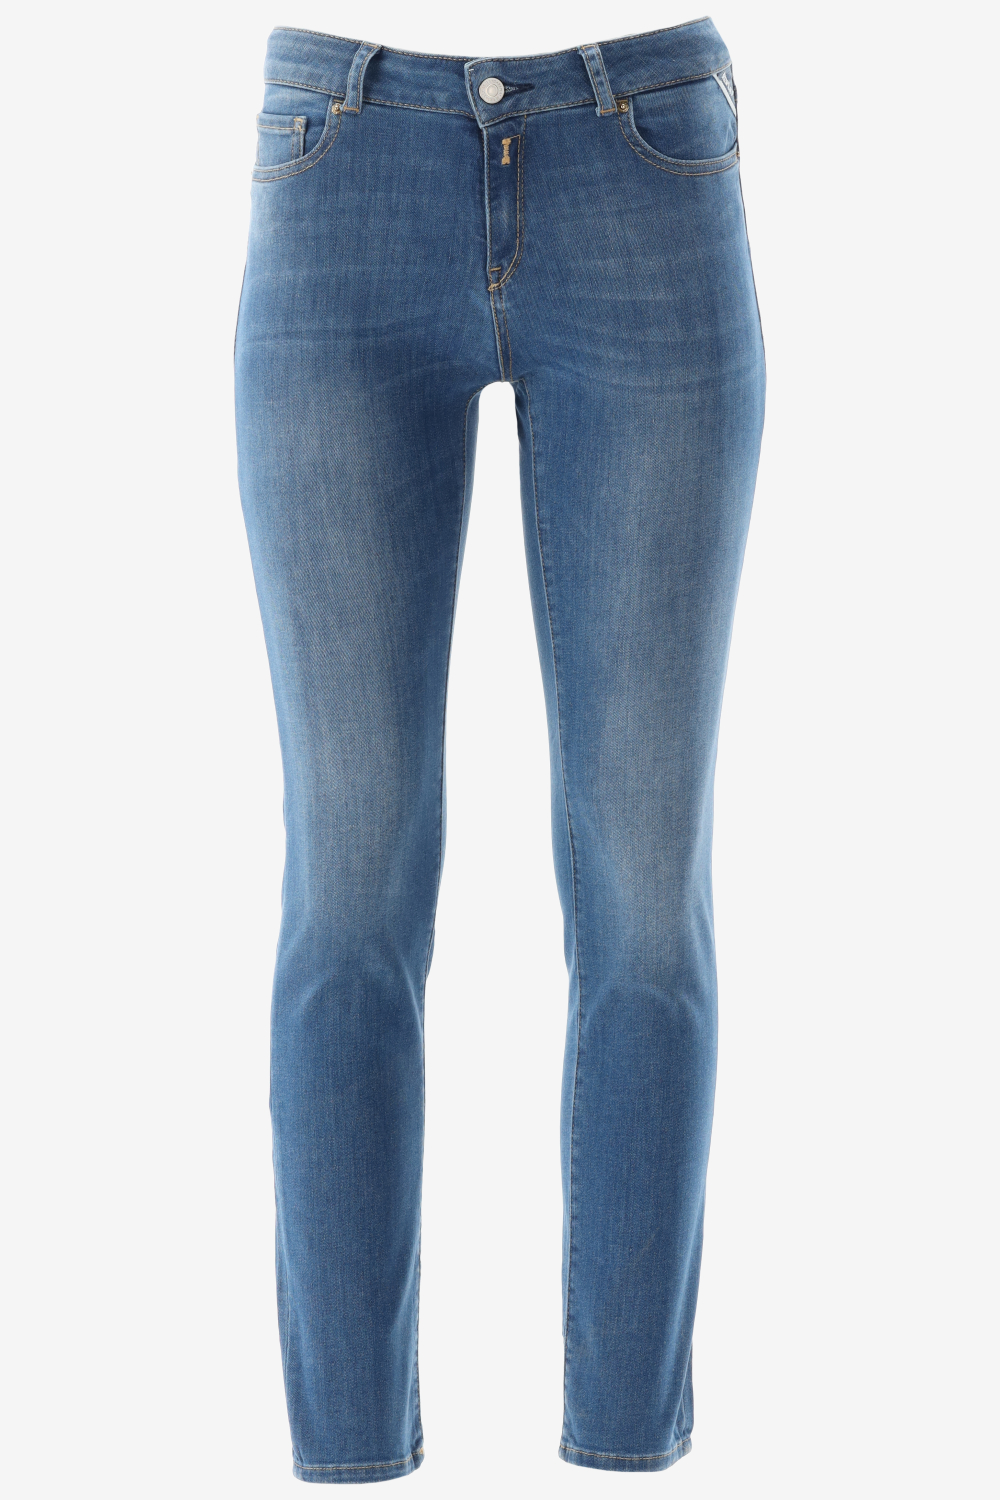 REPLAY WA429 .000.41A 303 Jeans - Dames - Medium Blue - W28 X L28